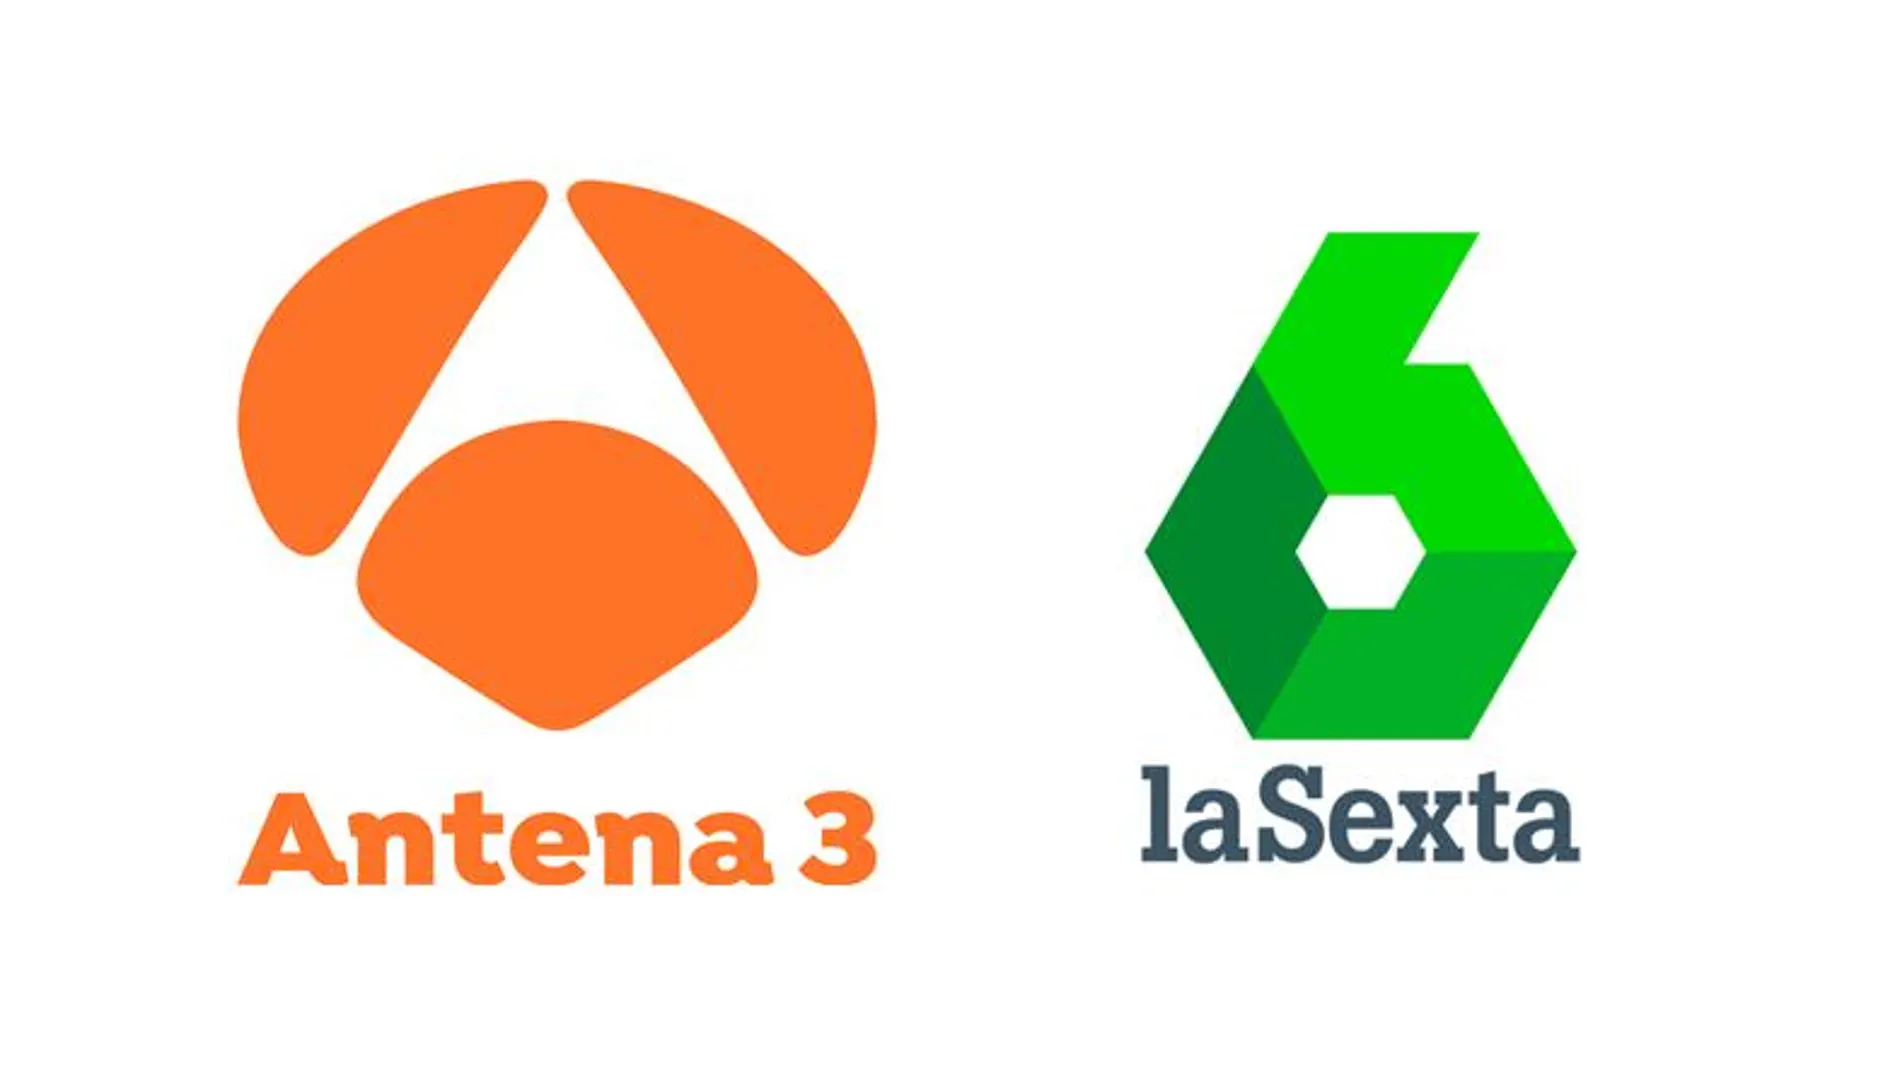 Antena 3 y laSexta, cadenas mejor valoradas según el estudio de Imagen TV de Personality Media